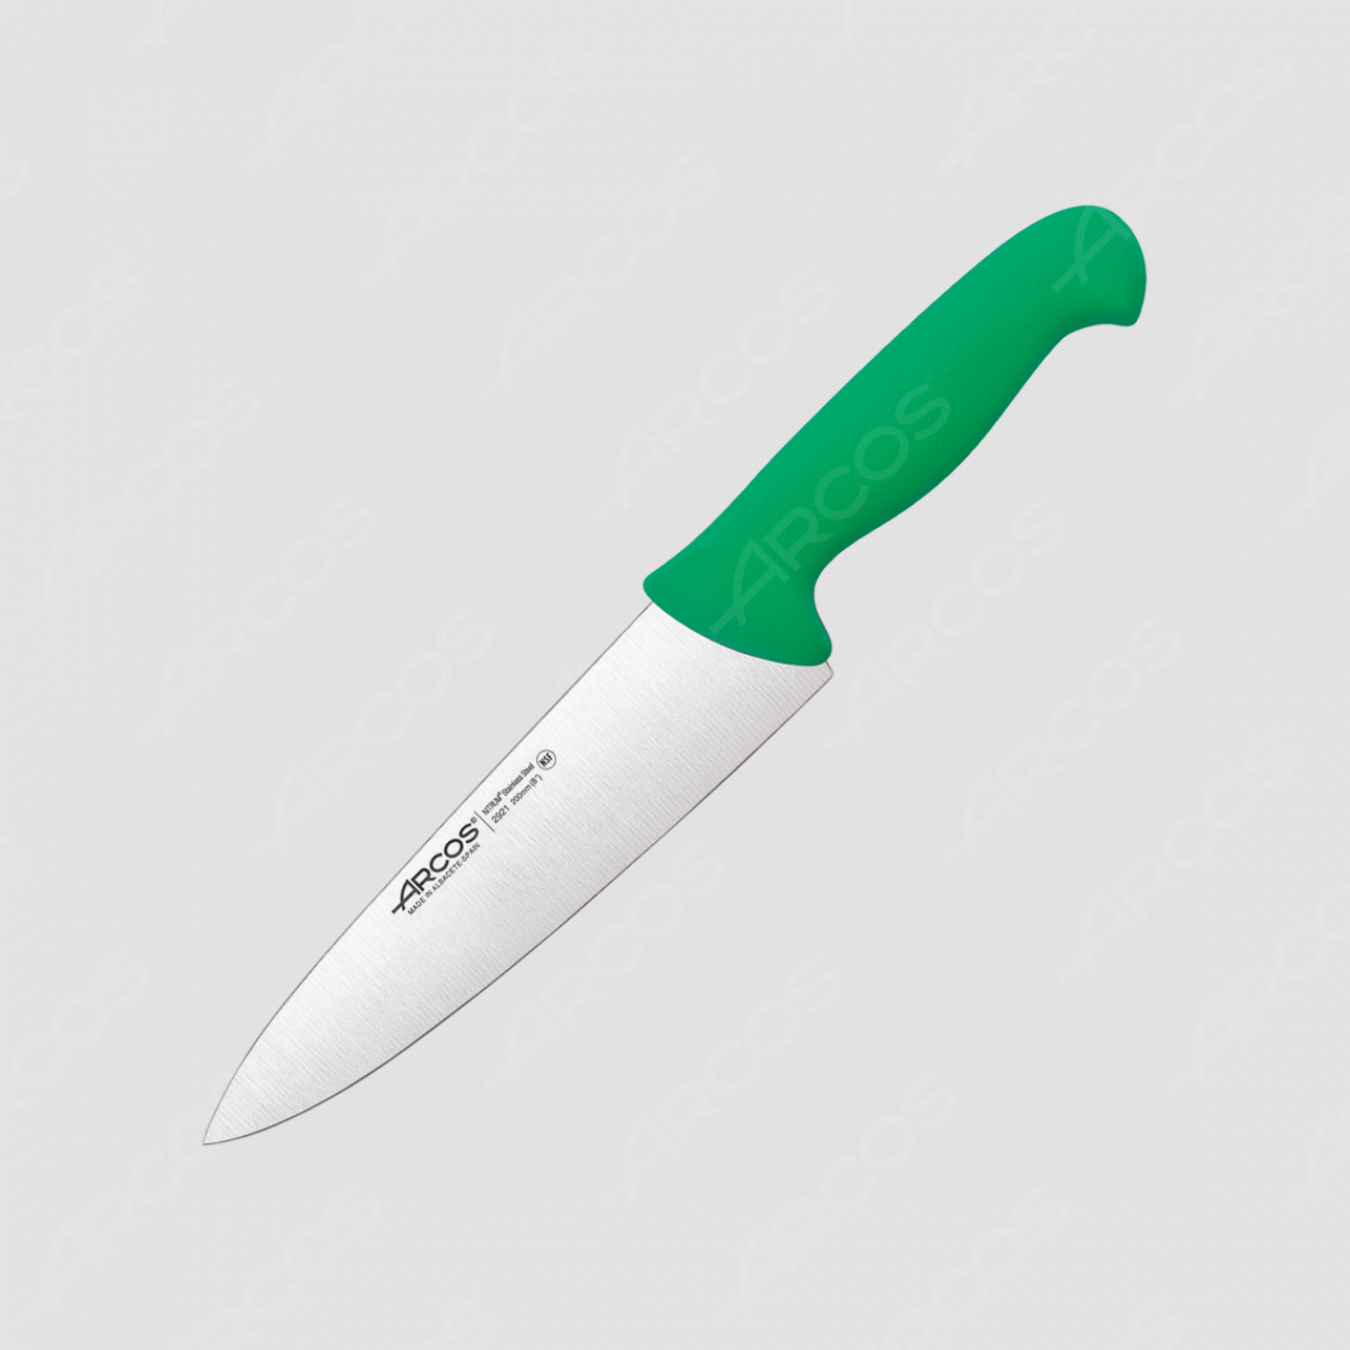 Профессиональный поварской кухонный нож 20 см, рукоять зеленая, серия 2900, ARCOS, Испания